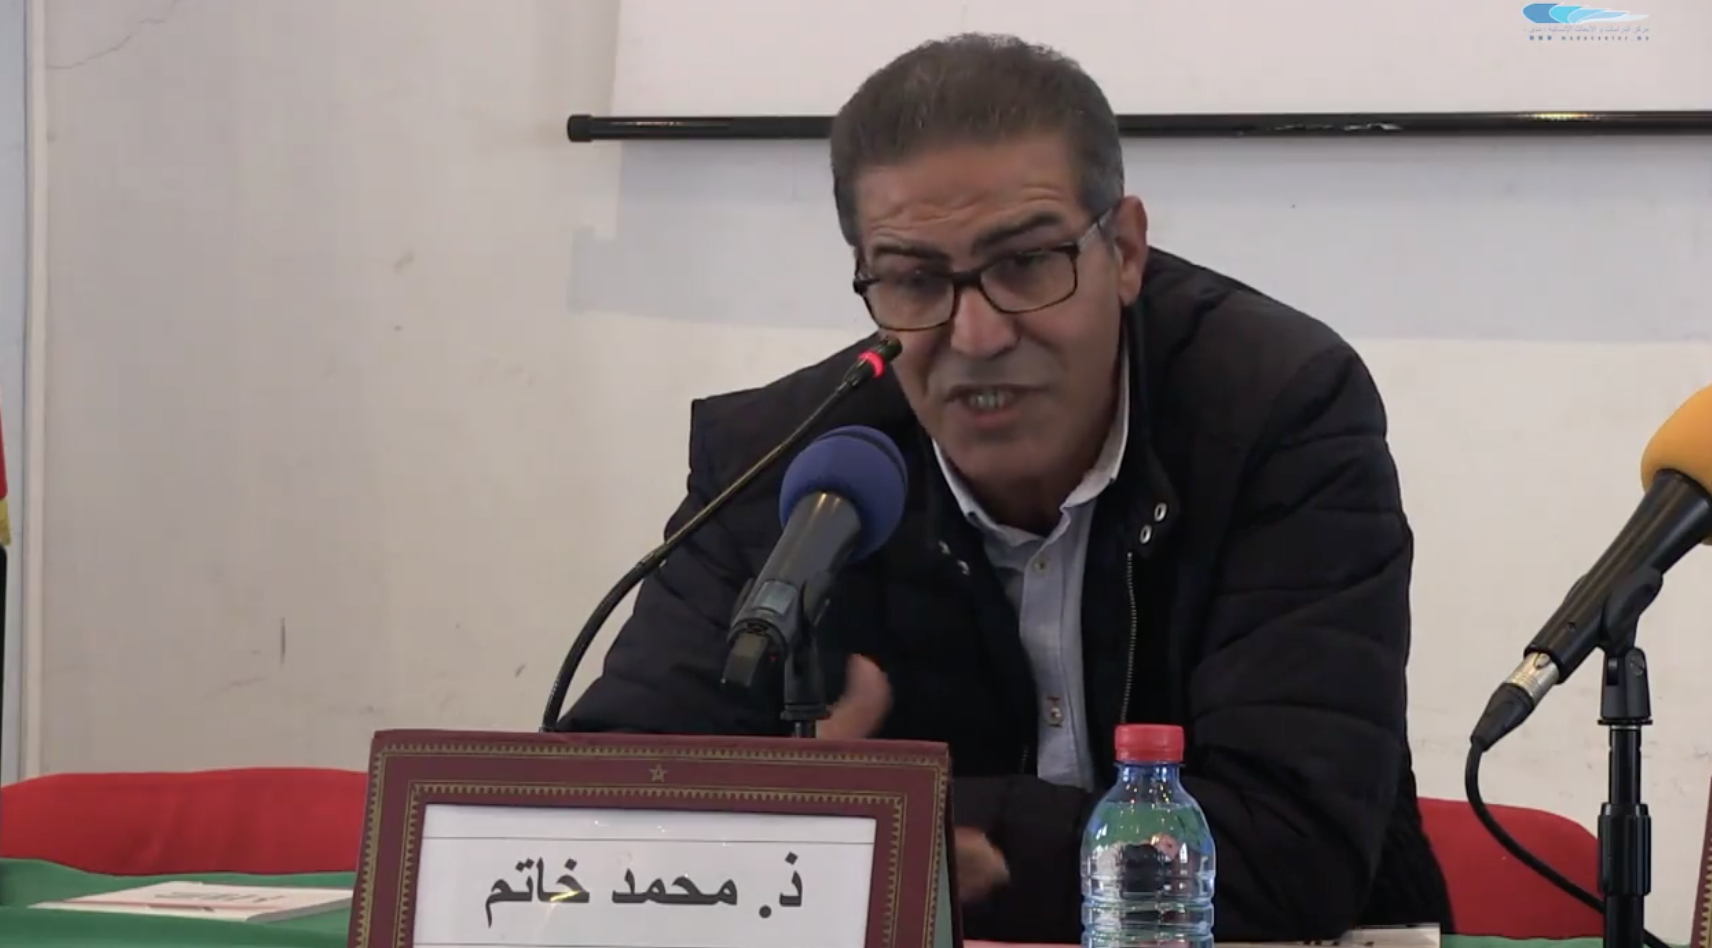 الصحافة الاستقصائية وتعزيز الديمقراطية بالمغرب